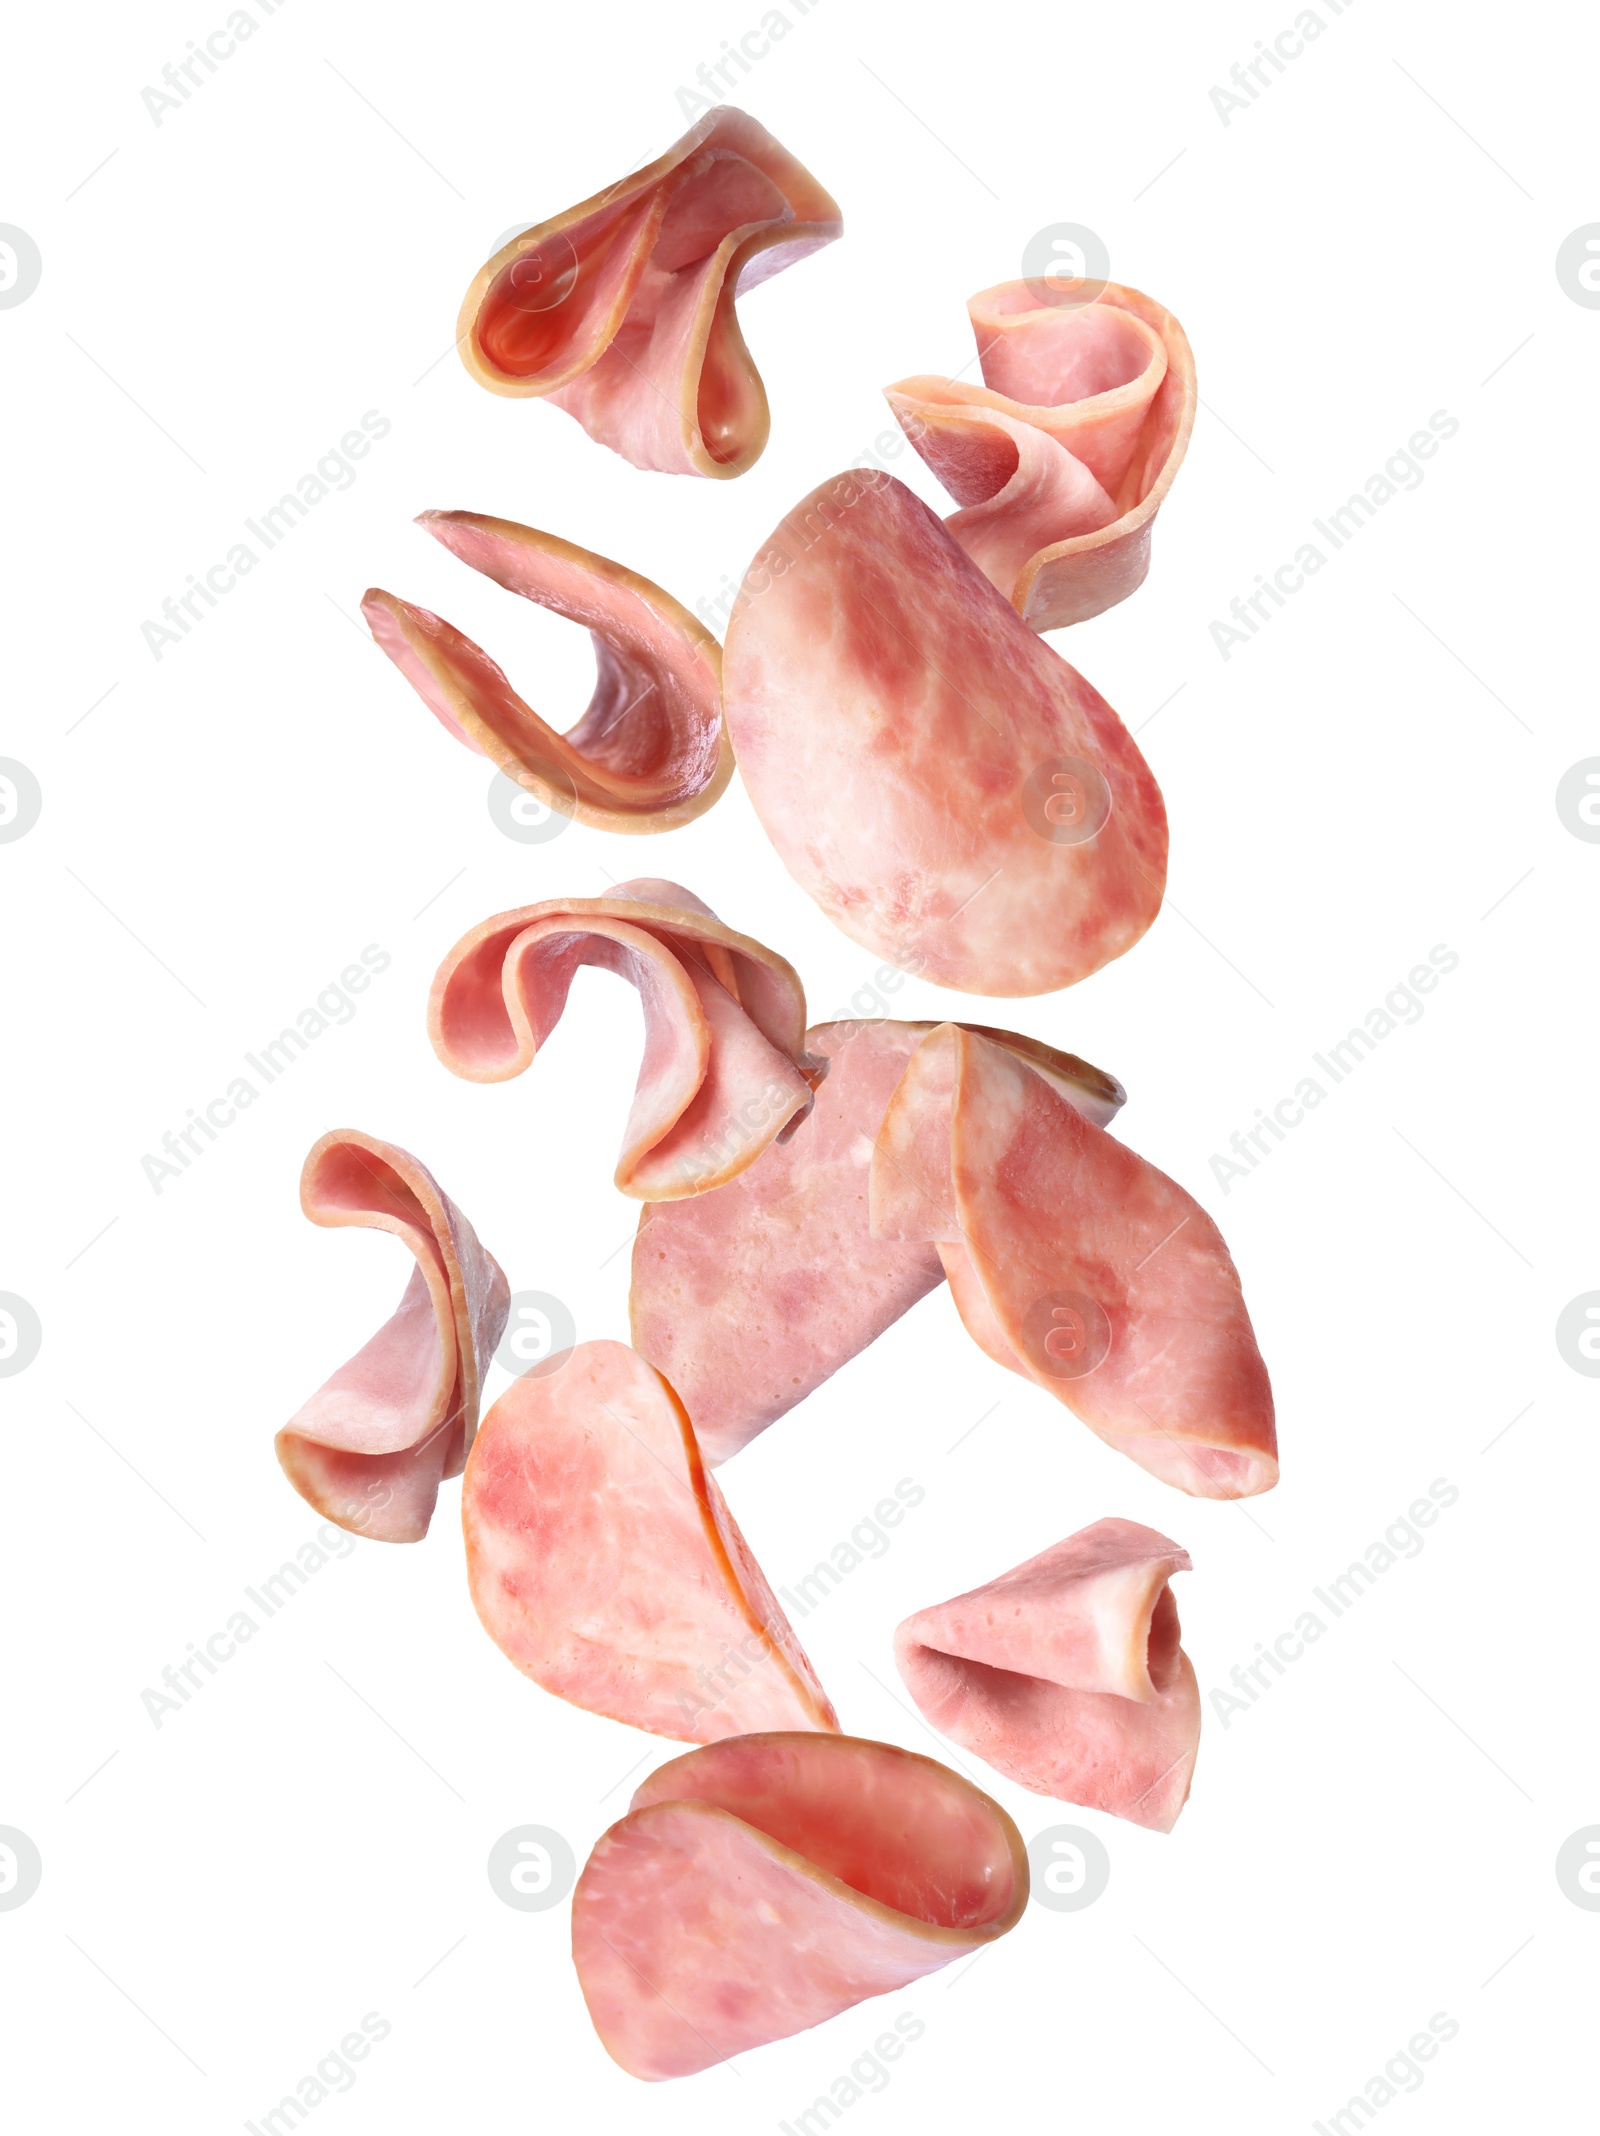 Image of Set of flying cut fresh ham on white background